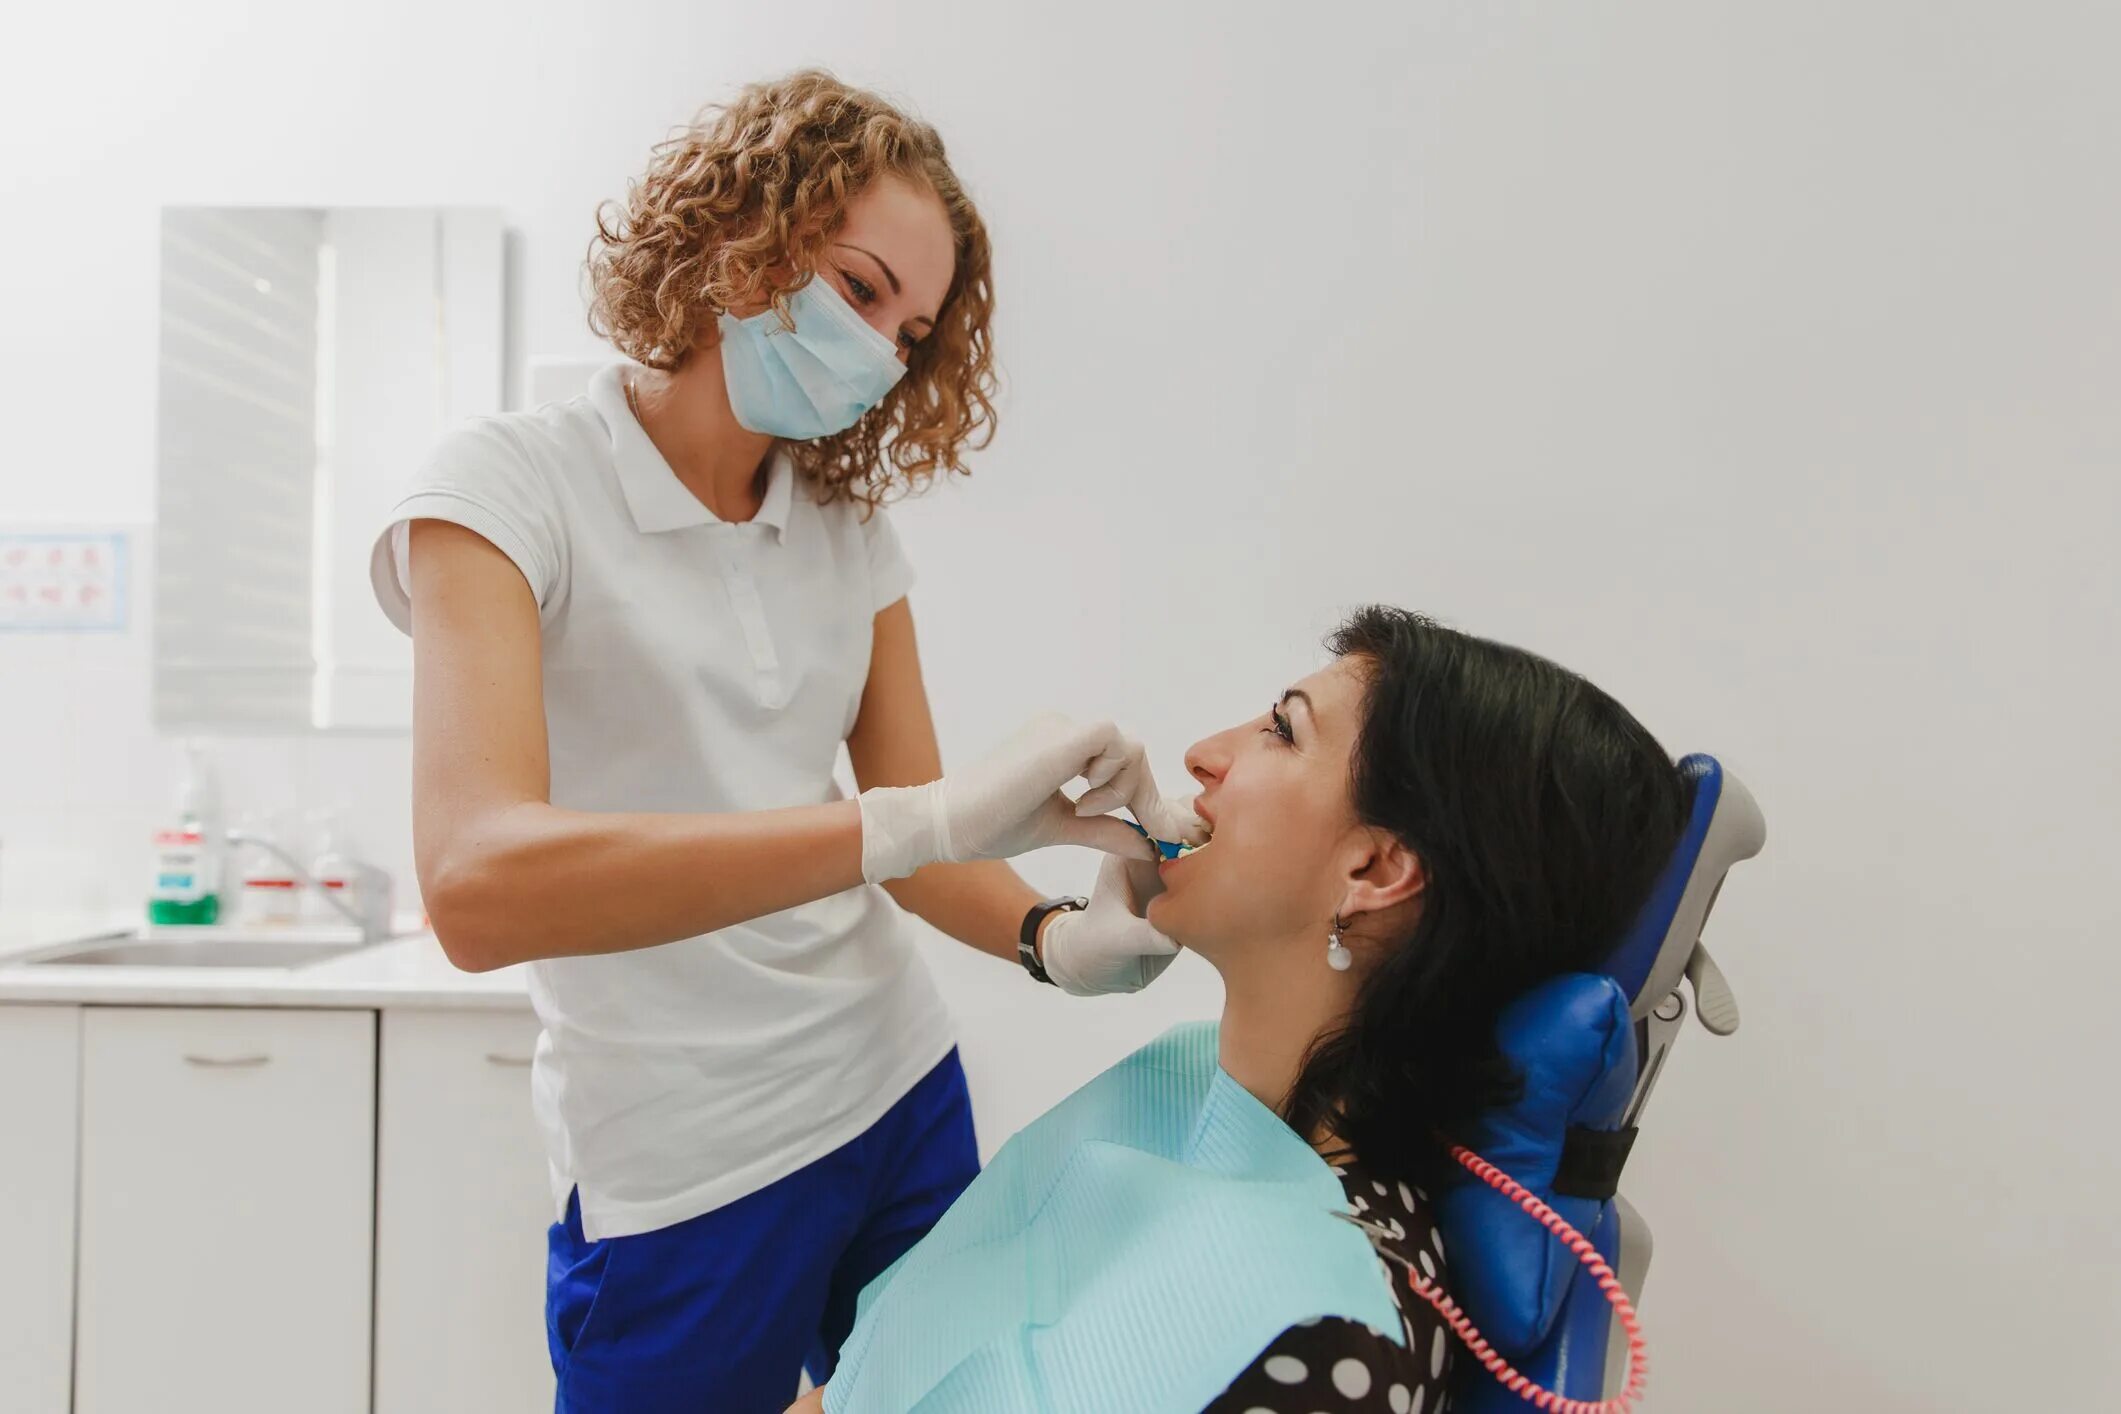 Полоскание рта пациента. Девушка стоматолог. Девушка стоматолог фото. Селфи стоматологов с пациентом с расширителем рта.